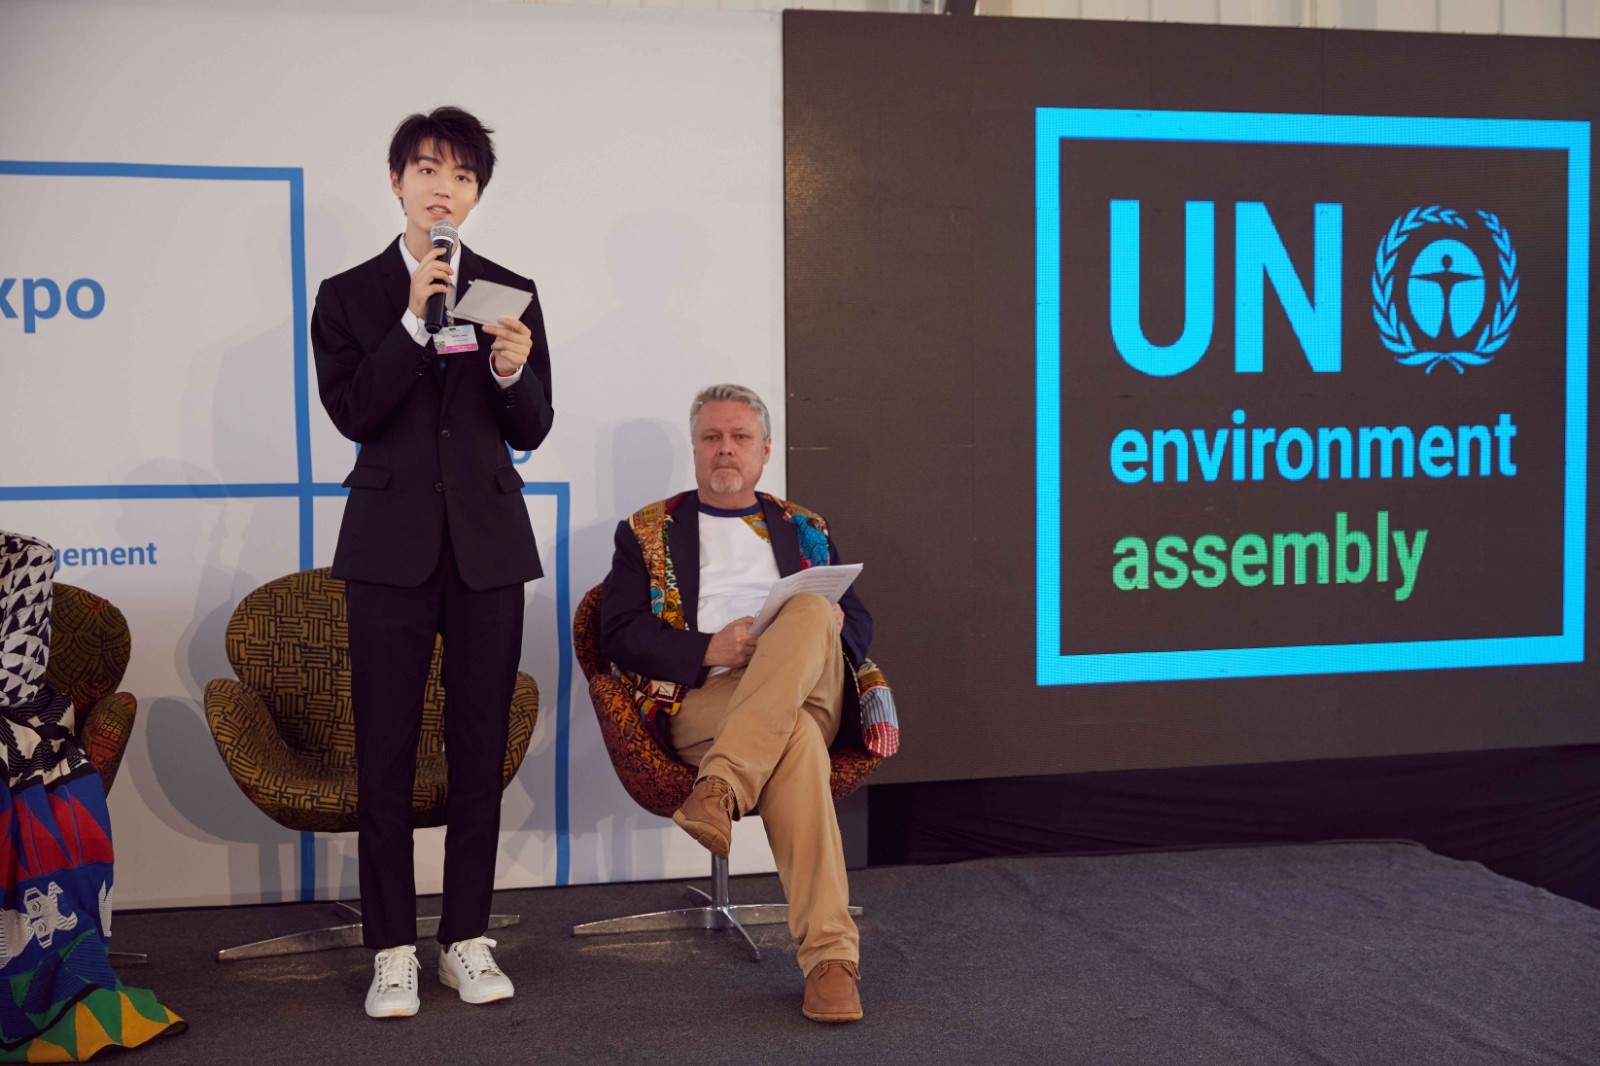 王俊凯受邀出席联合国会议 全英文演讲为环保发